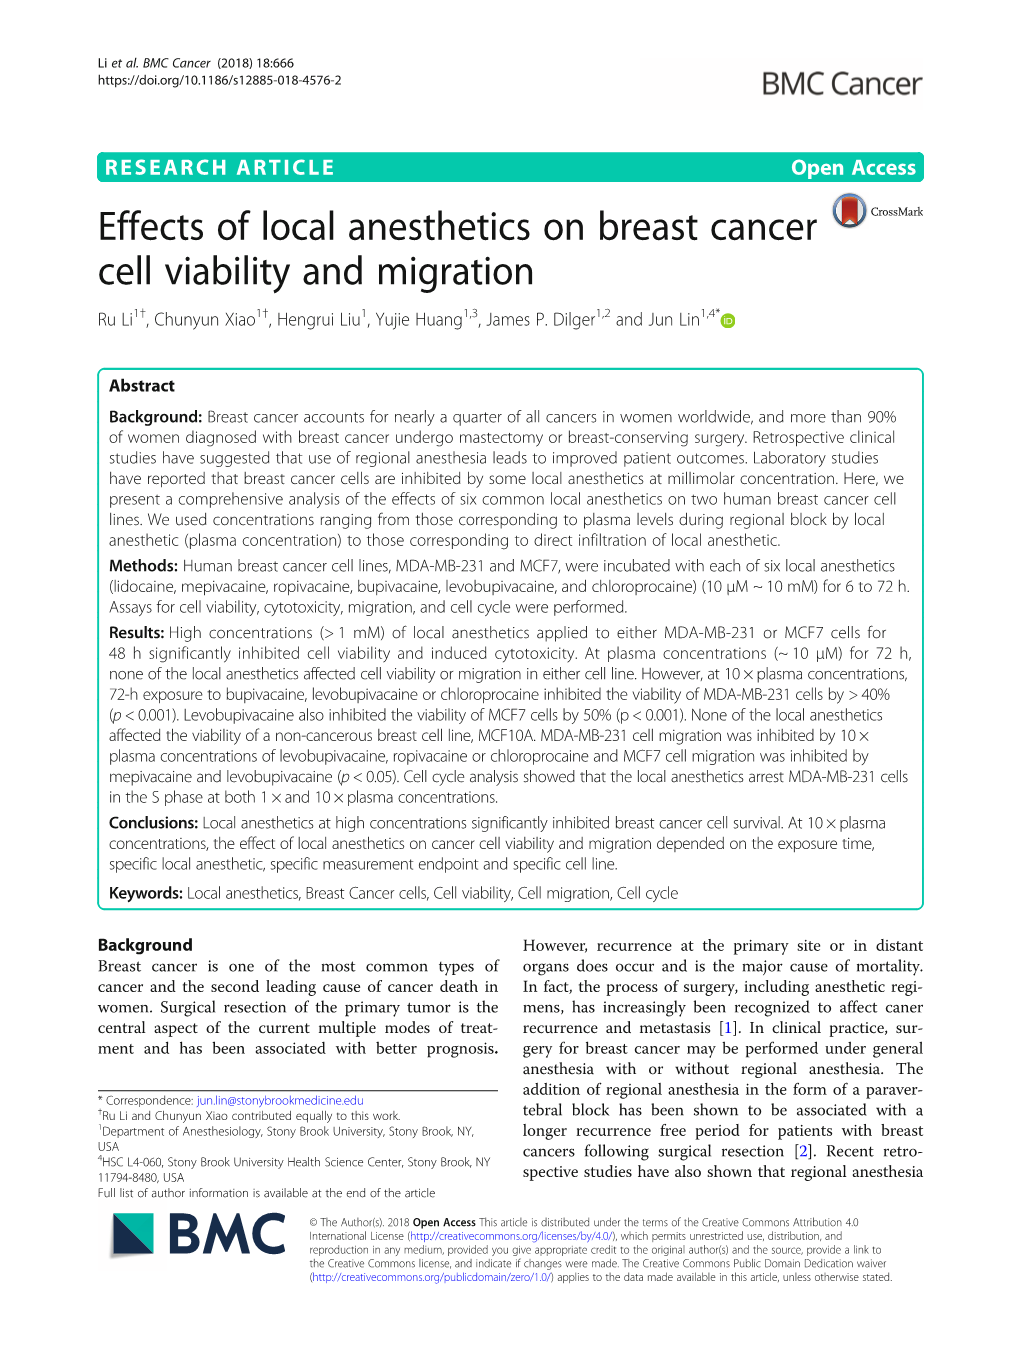 Effects of Local Anesthetics on Breast Cancer Cell Viability and Migration Ru Li1†, Chunyun Xiao1†, Hengrui Liu1, Yujie Huang1,3, James P